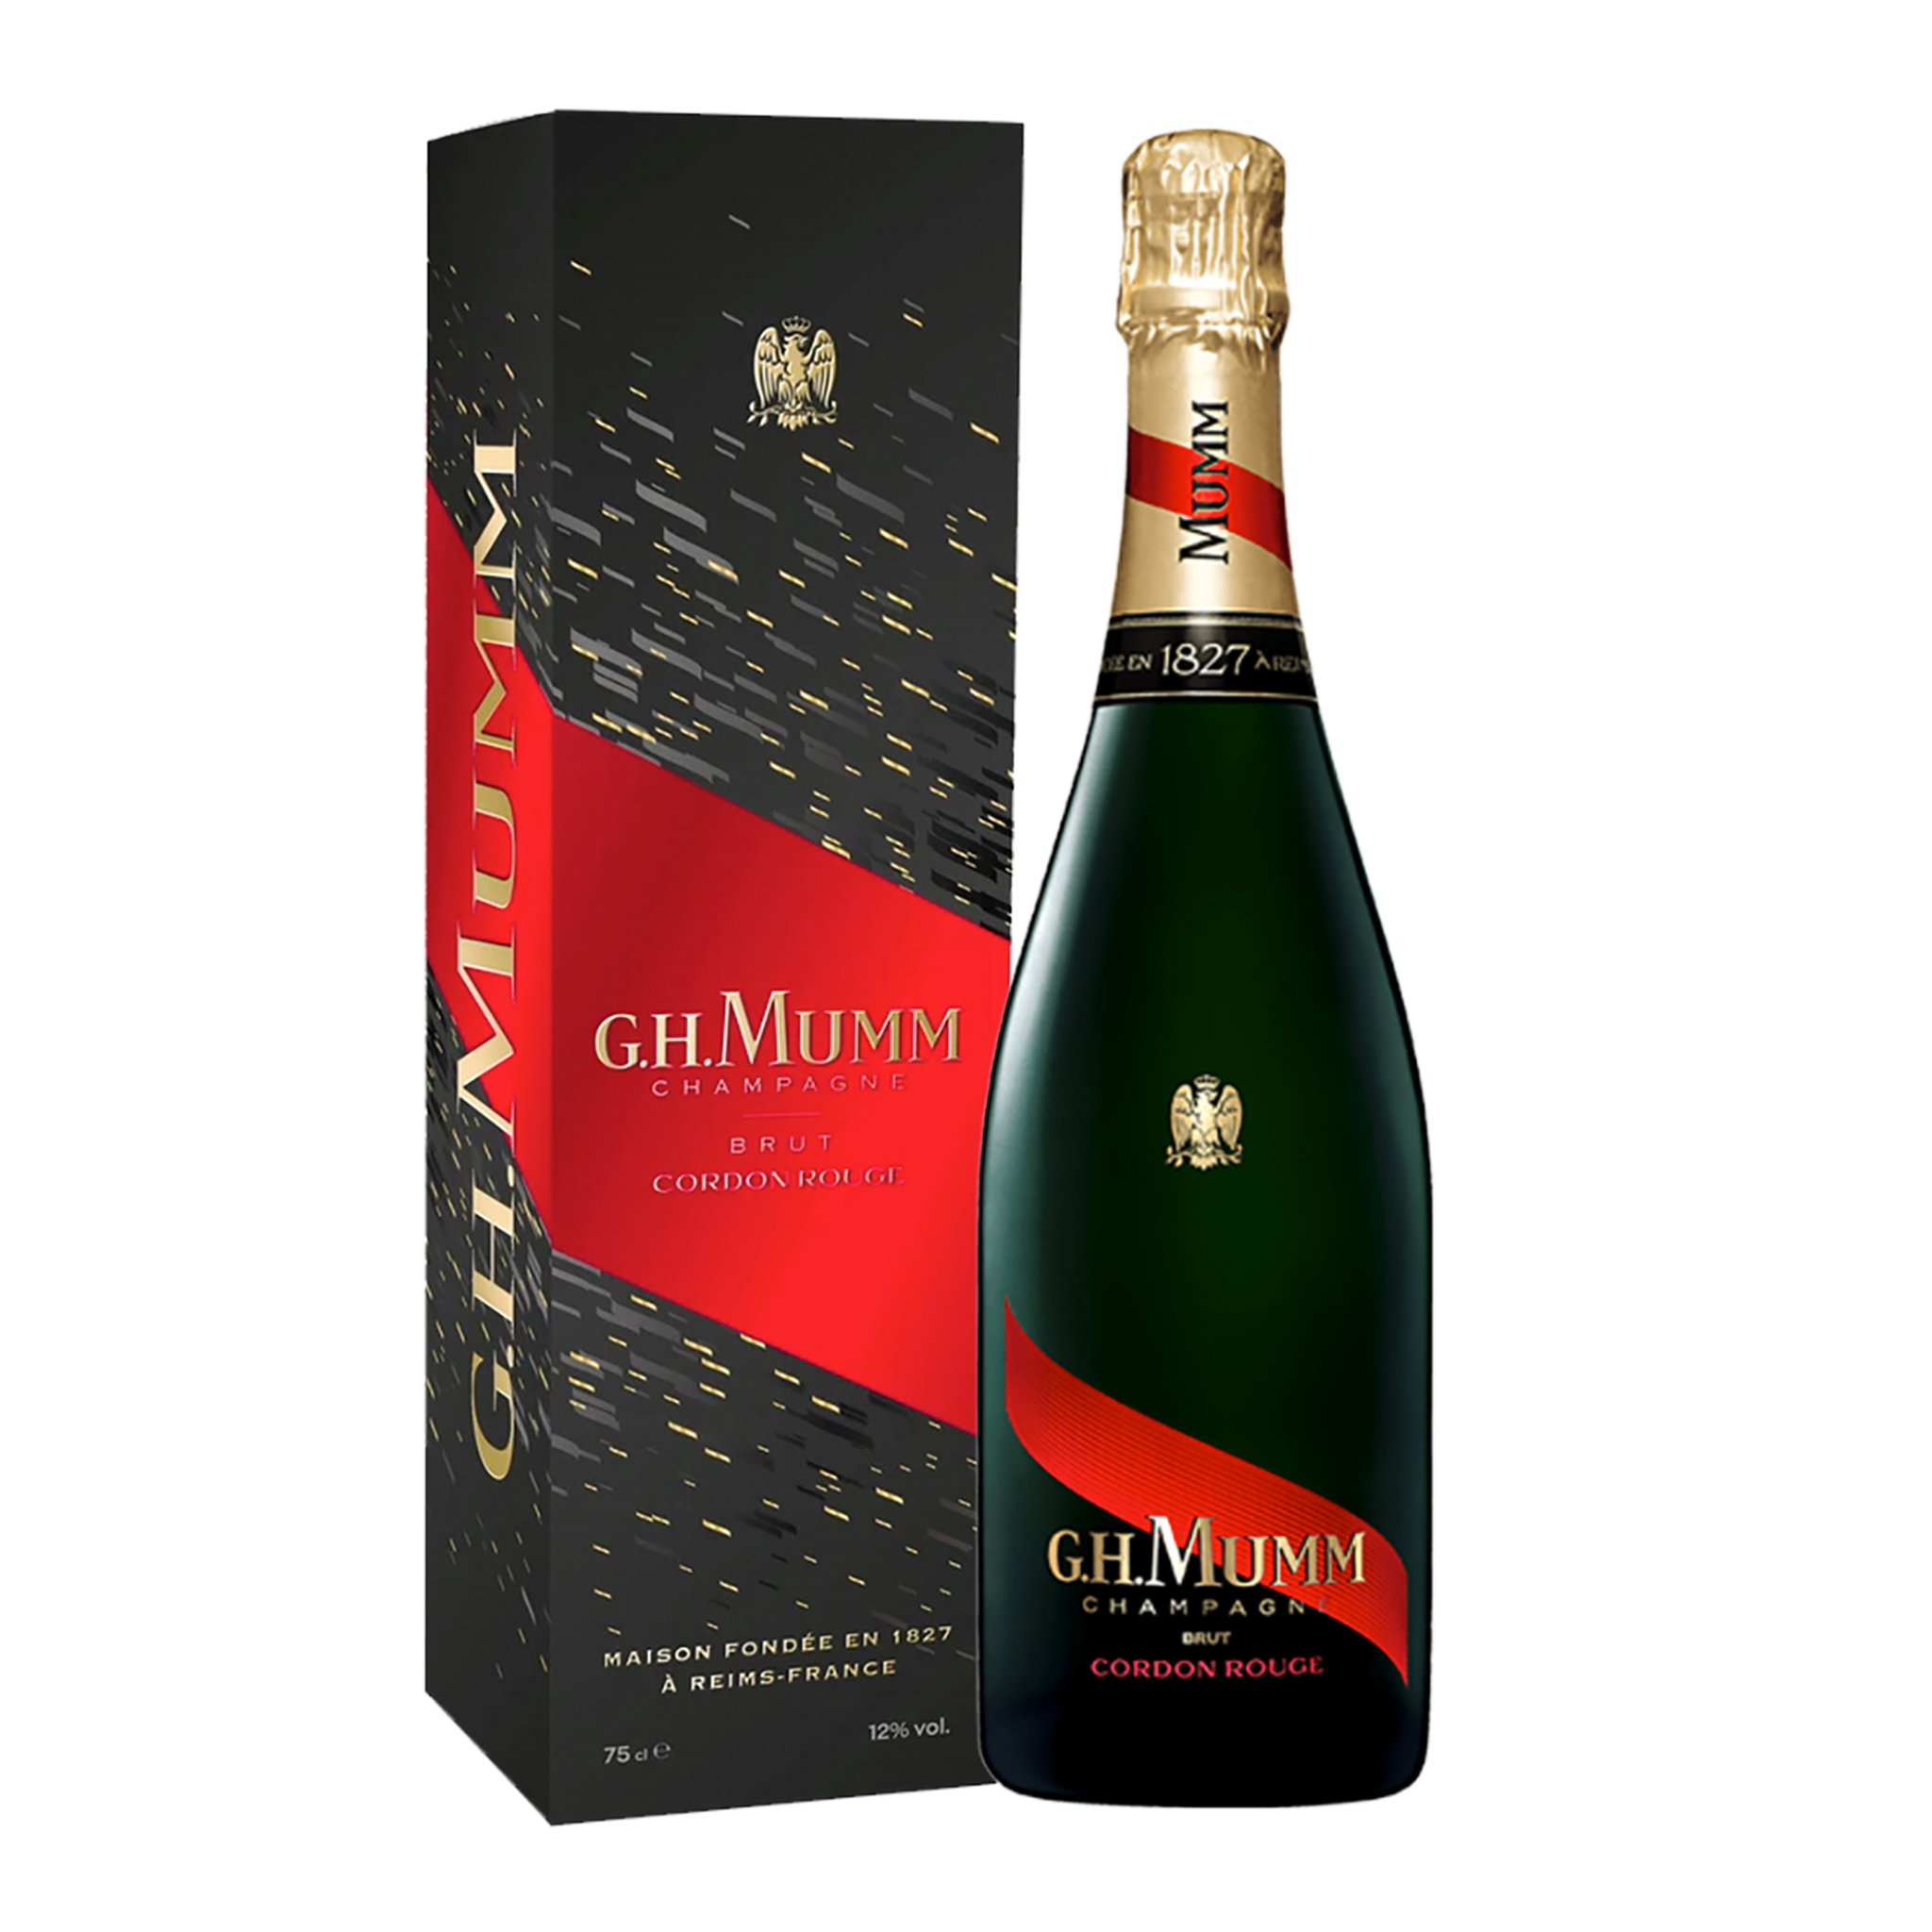 G.H Mumm Grand Cordon Brut Champagne gift set with 2 glasses 750ml